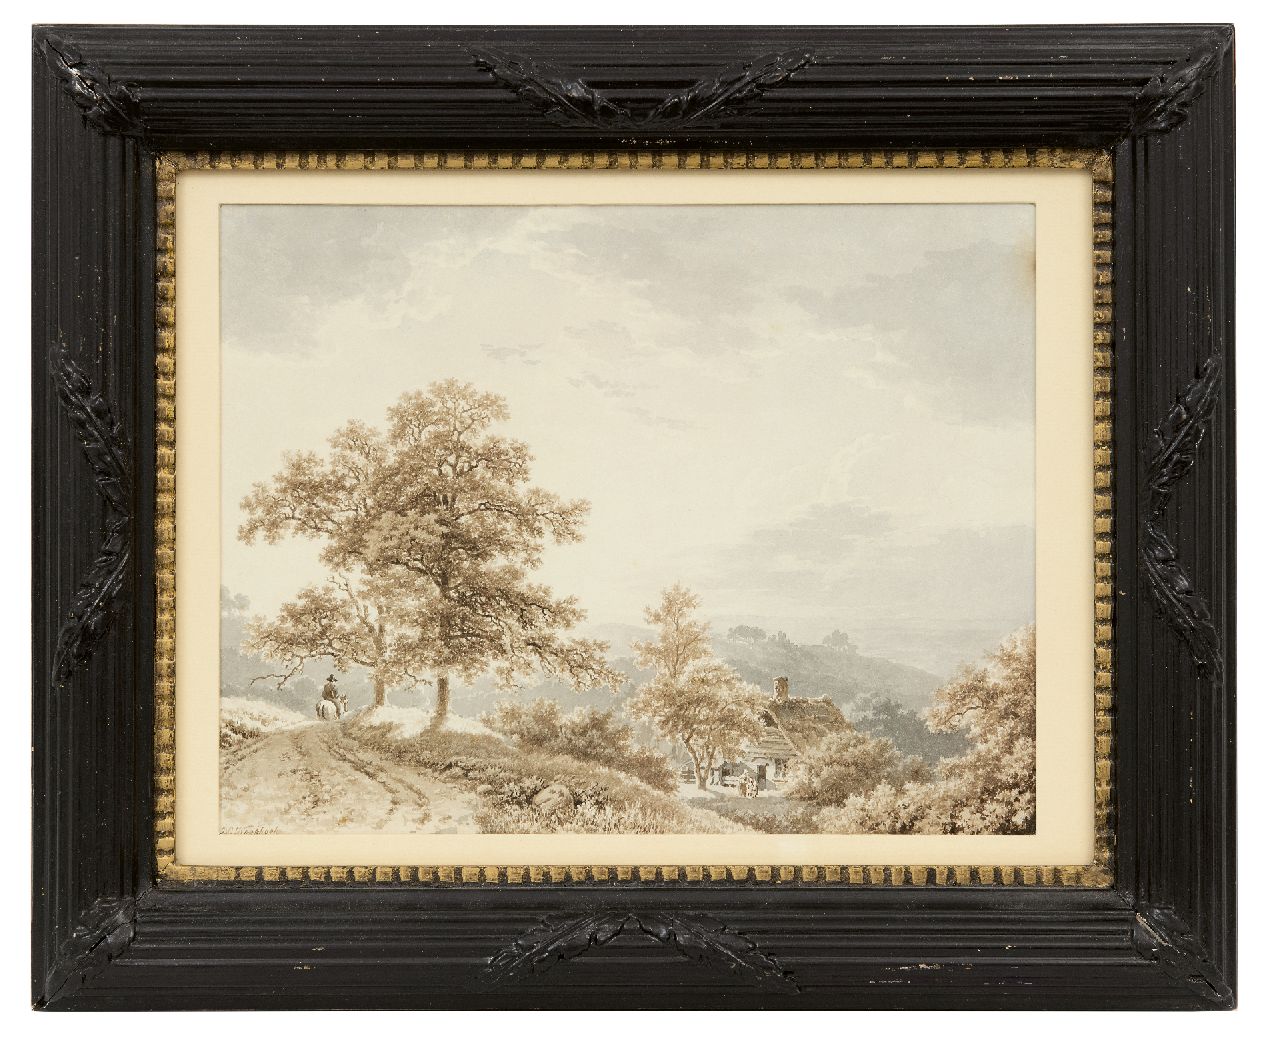 Koekkoek B.C.  | Barend Cornelis Koekkoek, Reiziger te paard in heuvelachtig landschap, sepia en gewassen inkt op papier 21,2 x 27,4 cm, gesigneerd linksonder en te dateren ca. 1833-1840